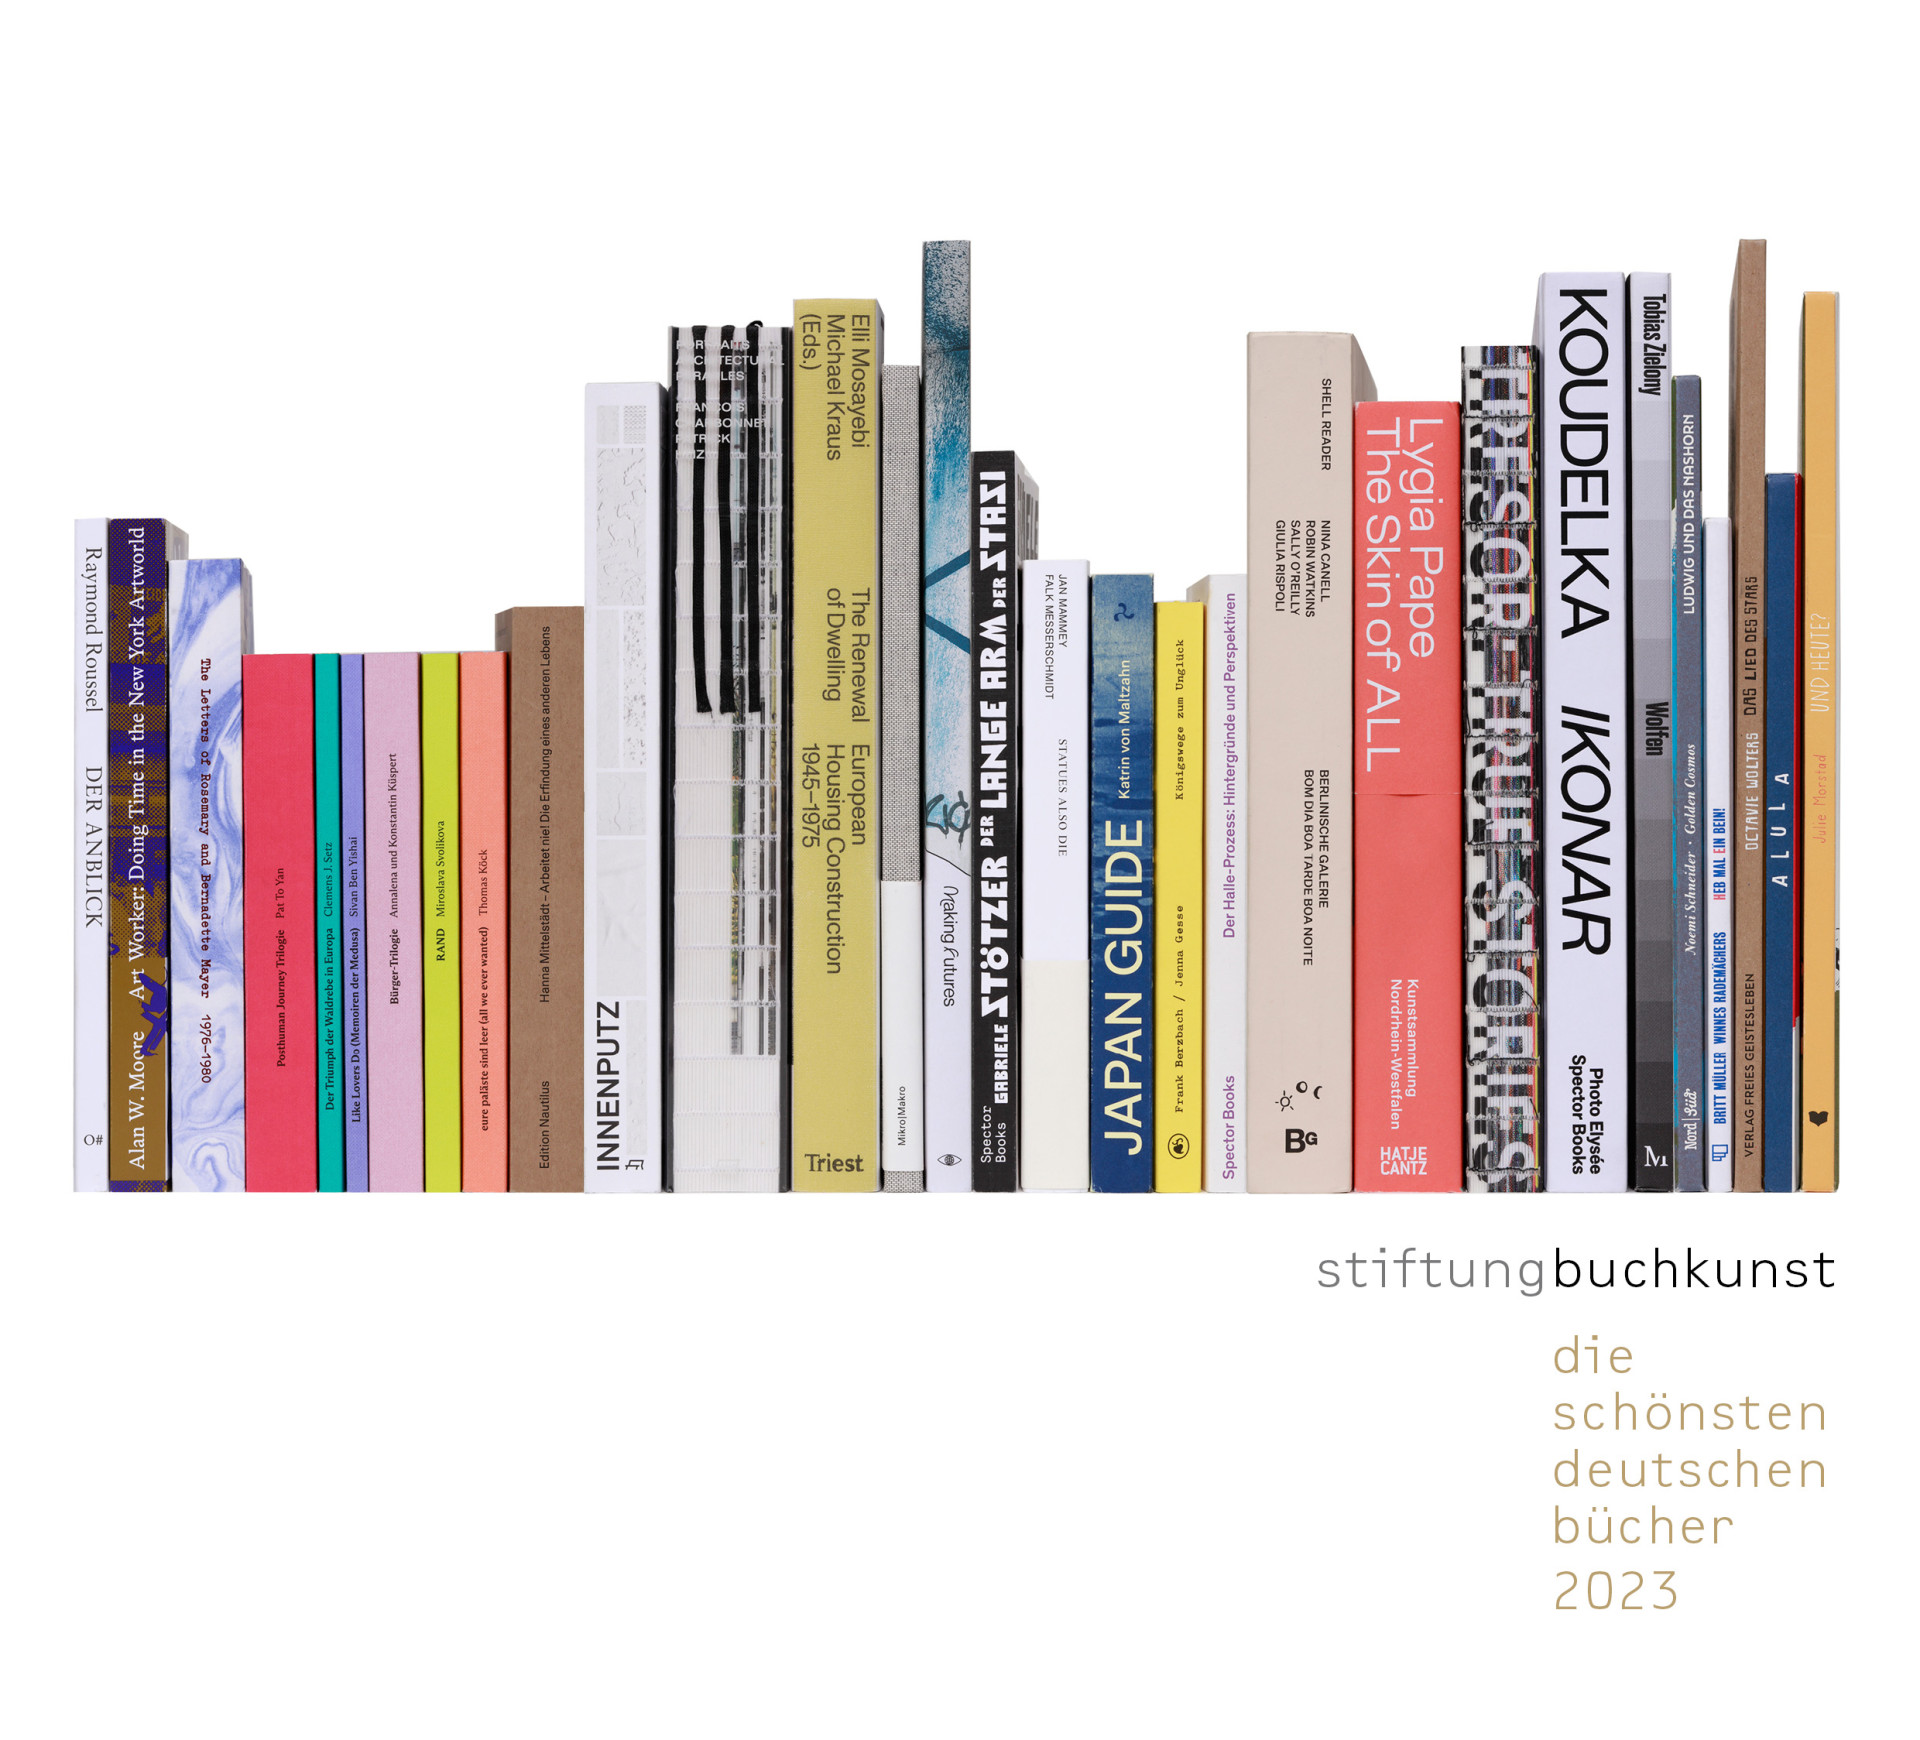 Die 25 Schönsten Deutschen Bücher 2023 der Stiftung Buchkunst stehen fest